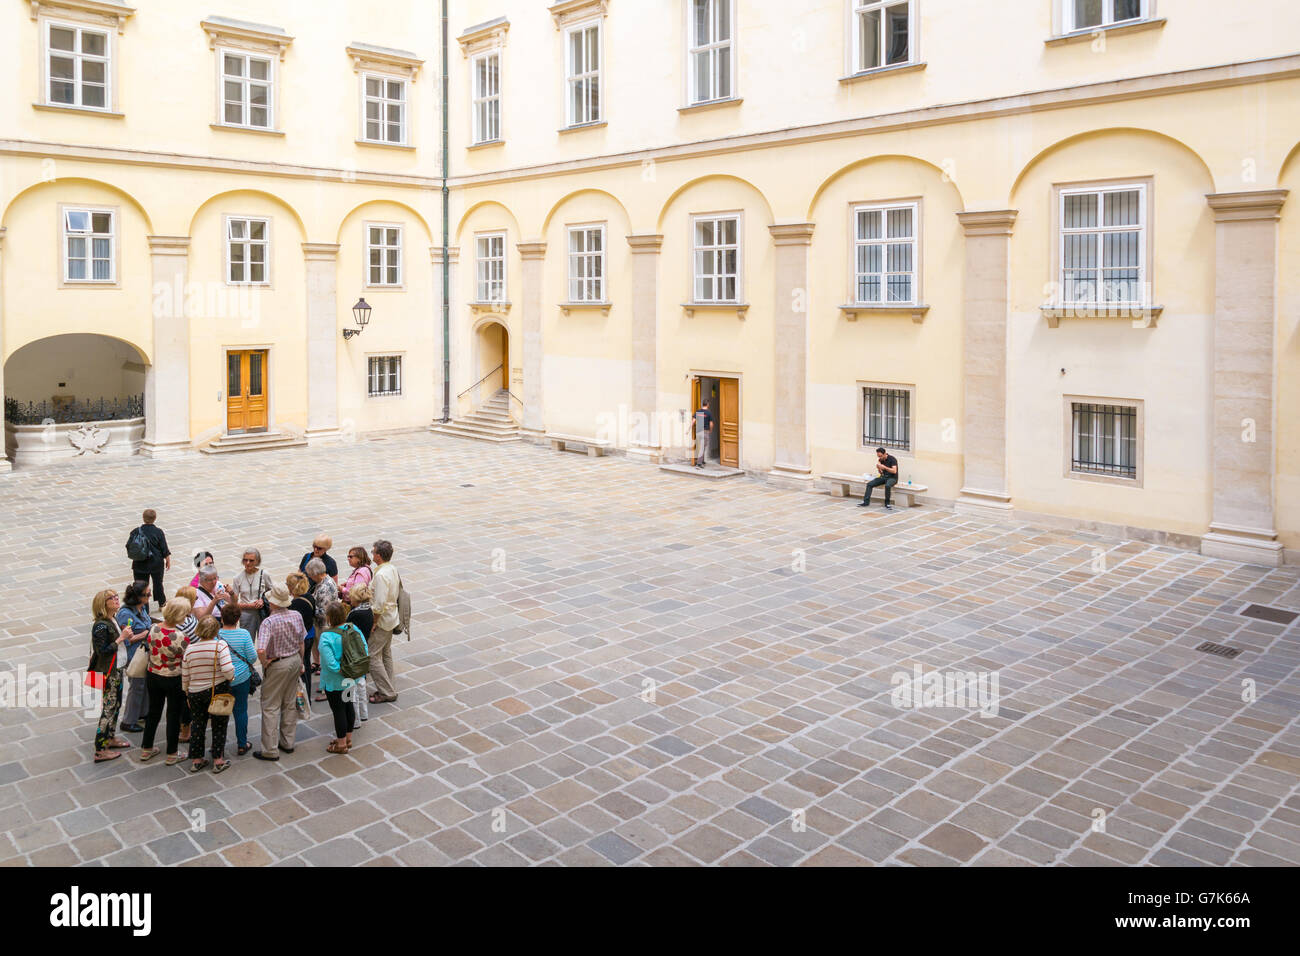 Gruppo di turisti con guida turistica in tribunale svizzero, il Palazzo Imperiale Hofburg di Vienna in Austria Foto Stock